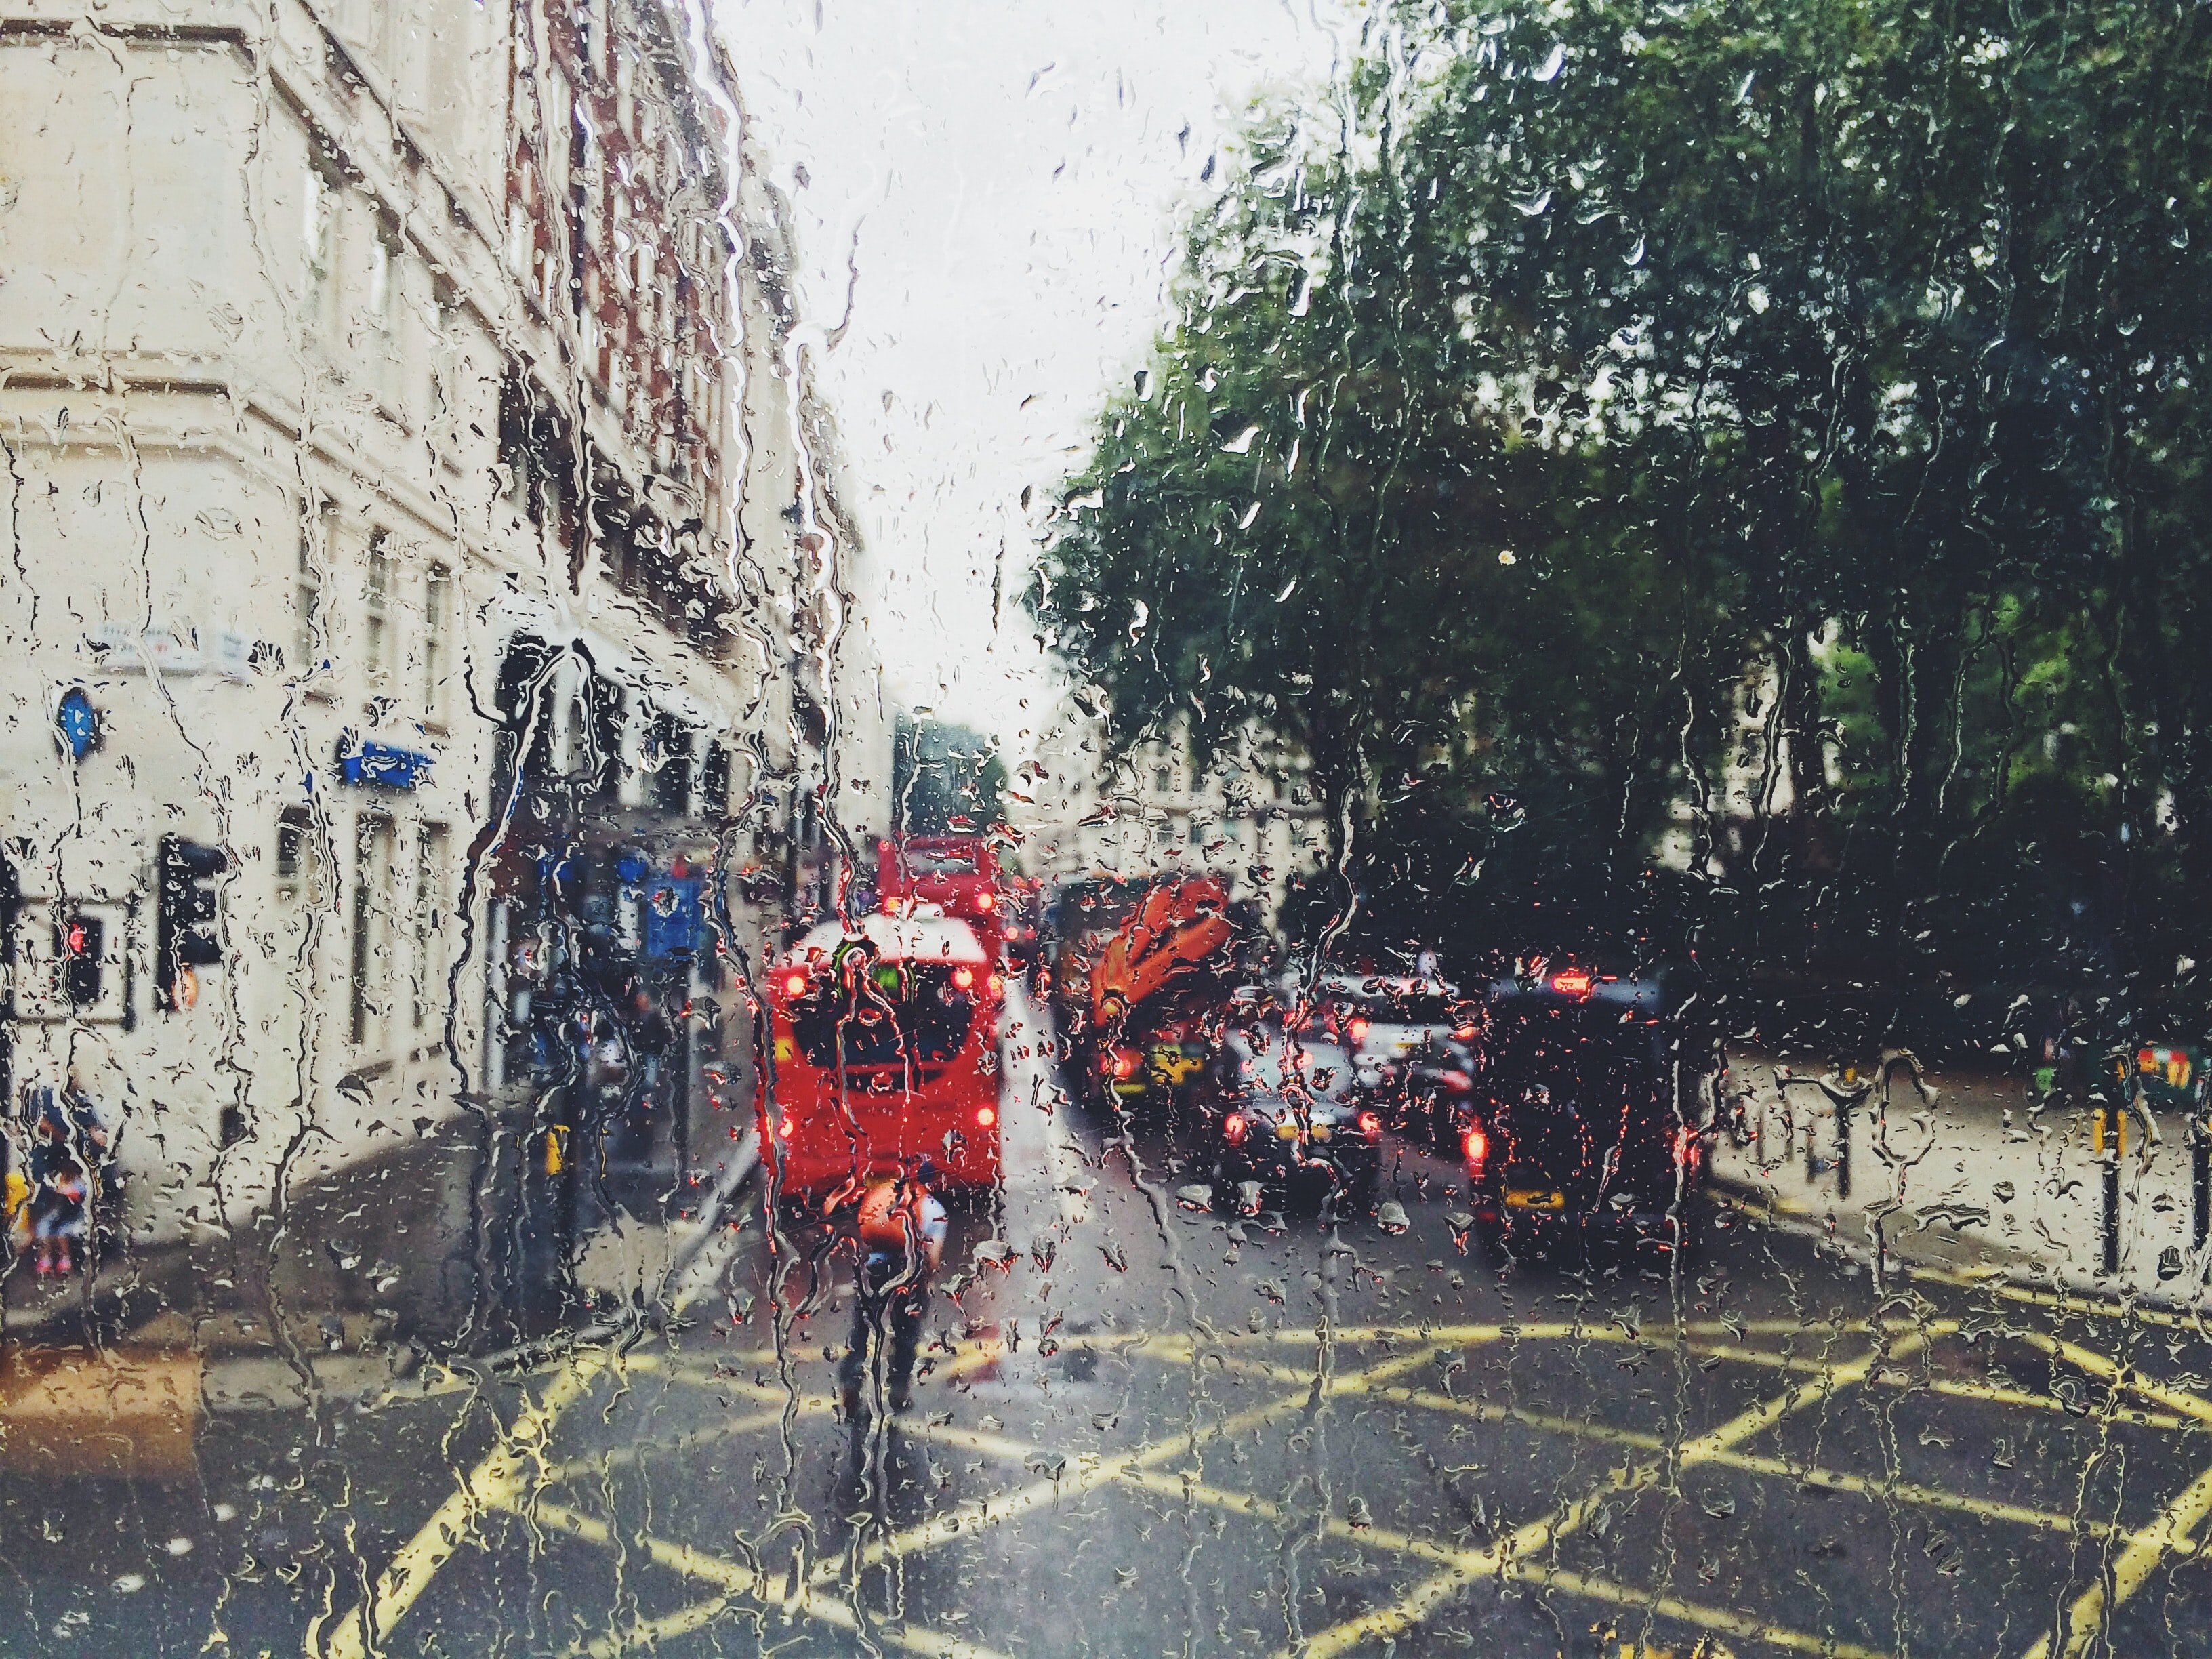 Un bus rouge dans une rue pluvieuse | Source: Unsplash